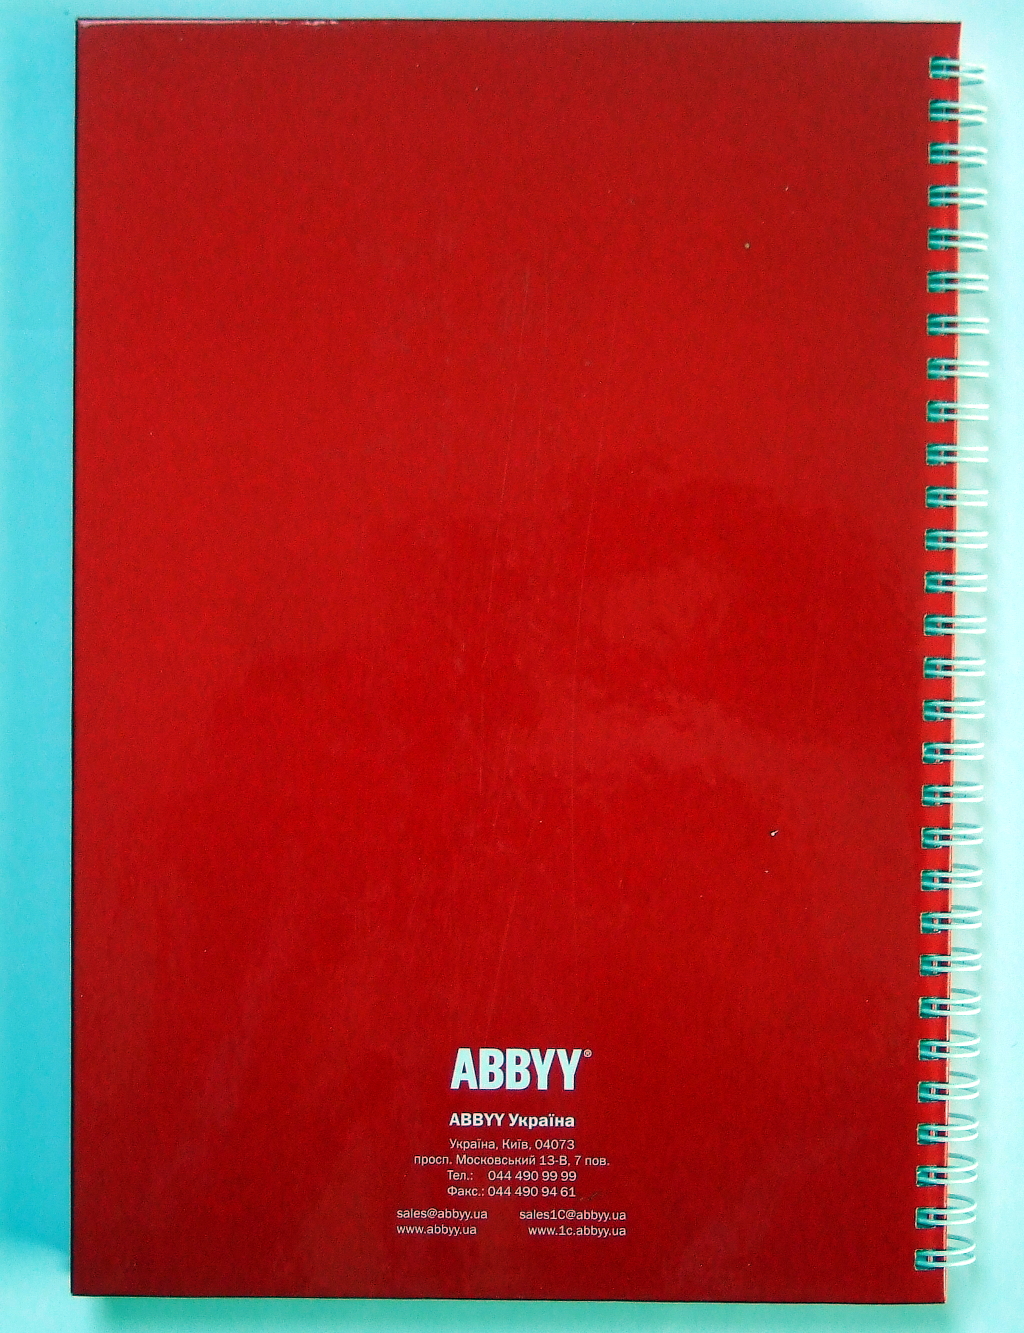 Изготовление блокнотов «ABBYY». Полиграфия типографии Макрос, изготовление блокнотов, спецификация 952994-9